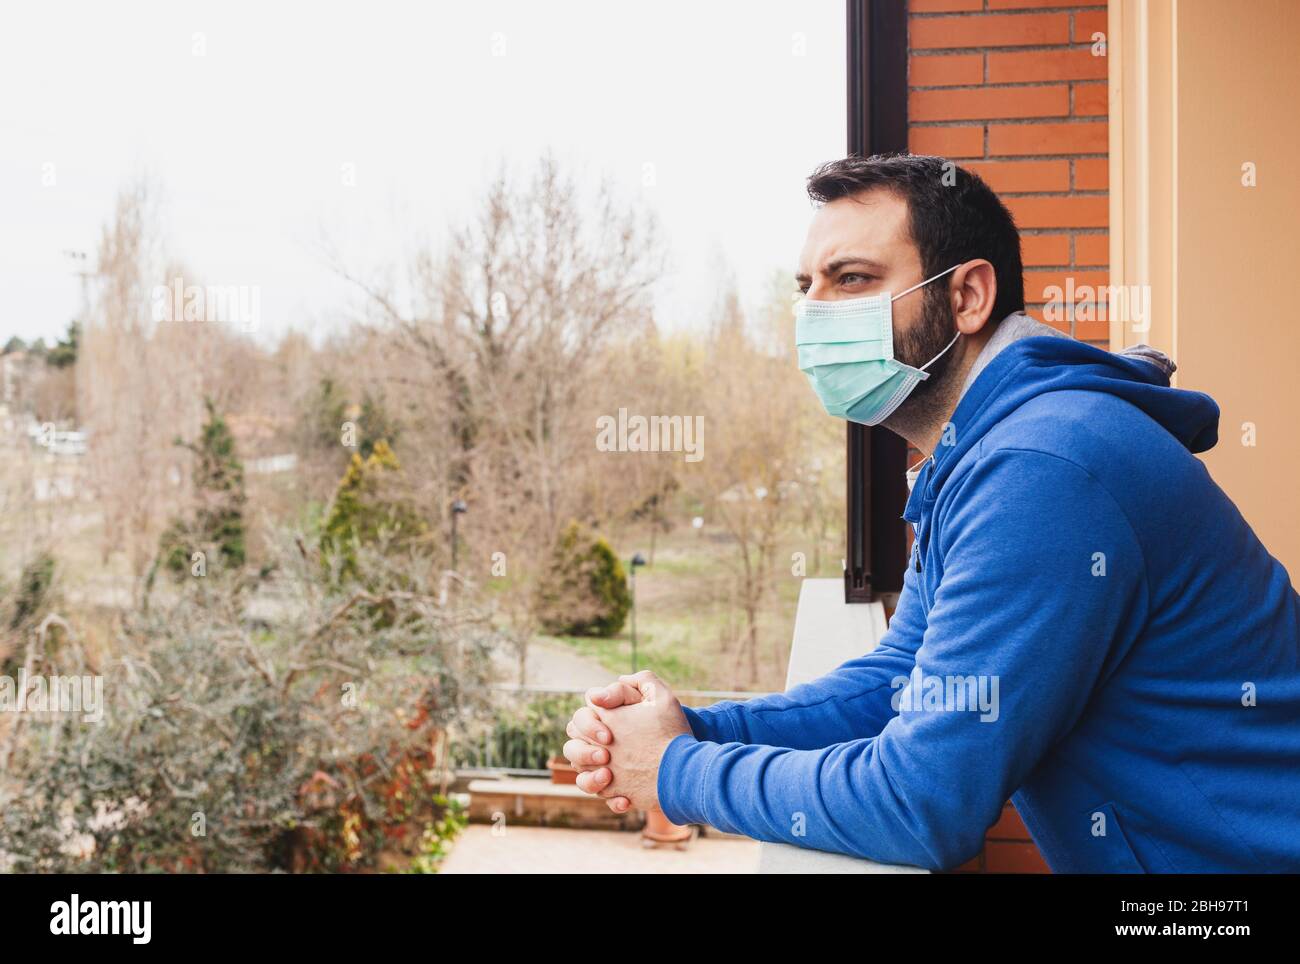 Jeune homme caucasien avec masque regardant sur la terrasse de la maison pendant la quarantaine en raison de la pandémie de covid19 du coronavirus. Banque D'Images